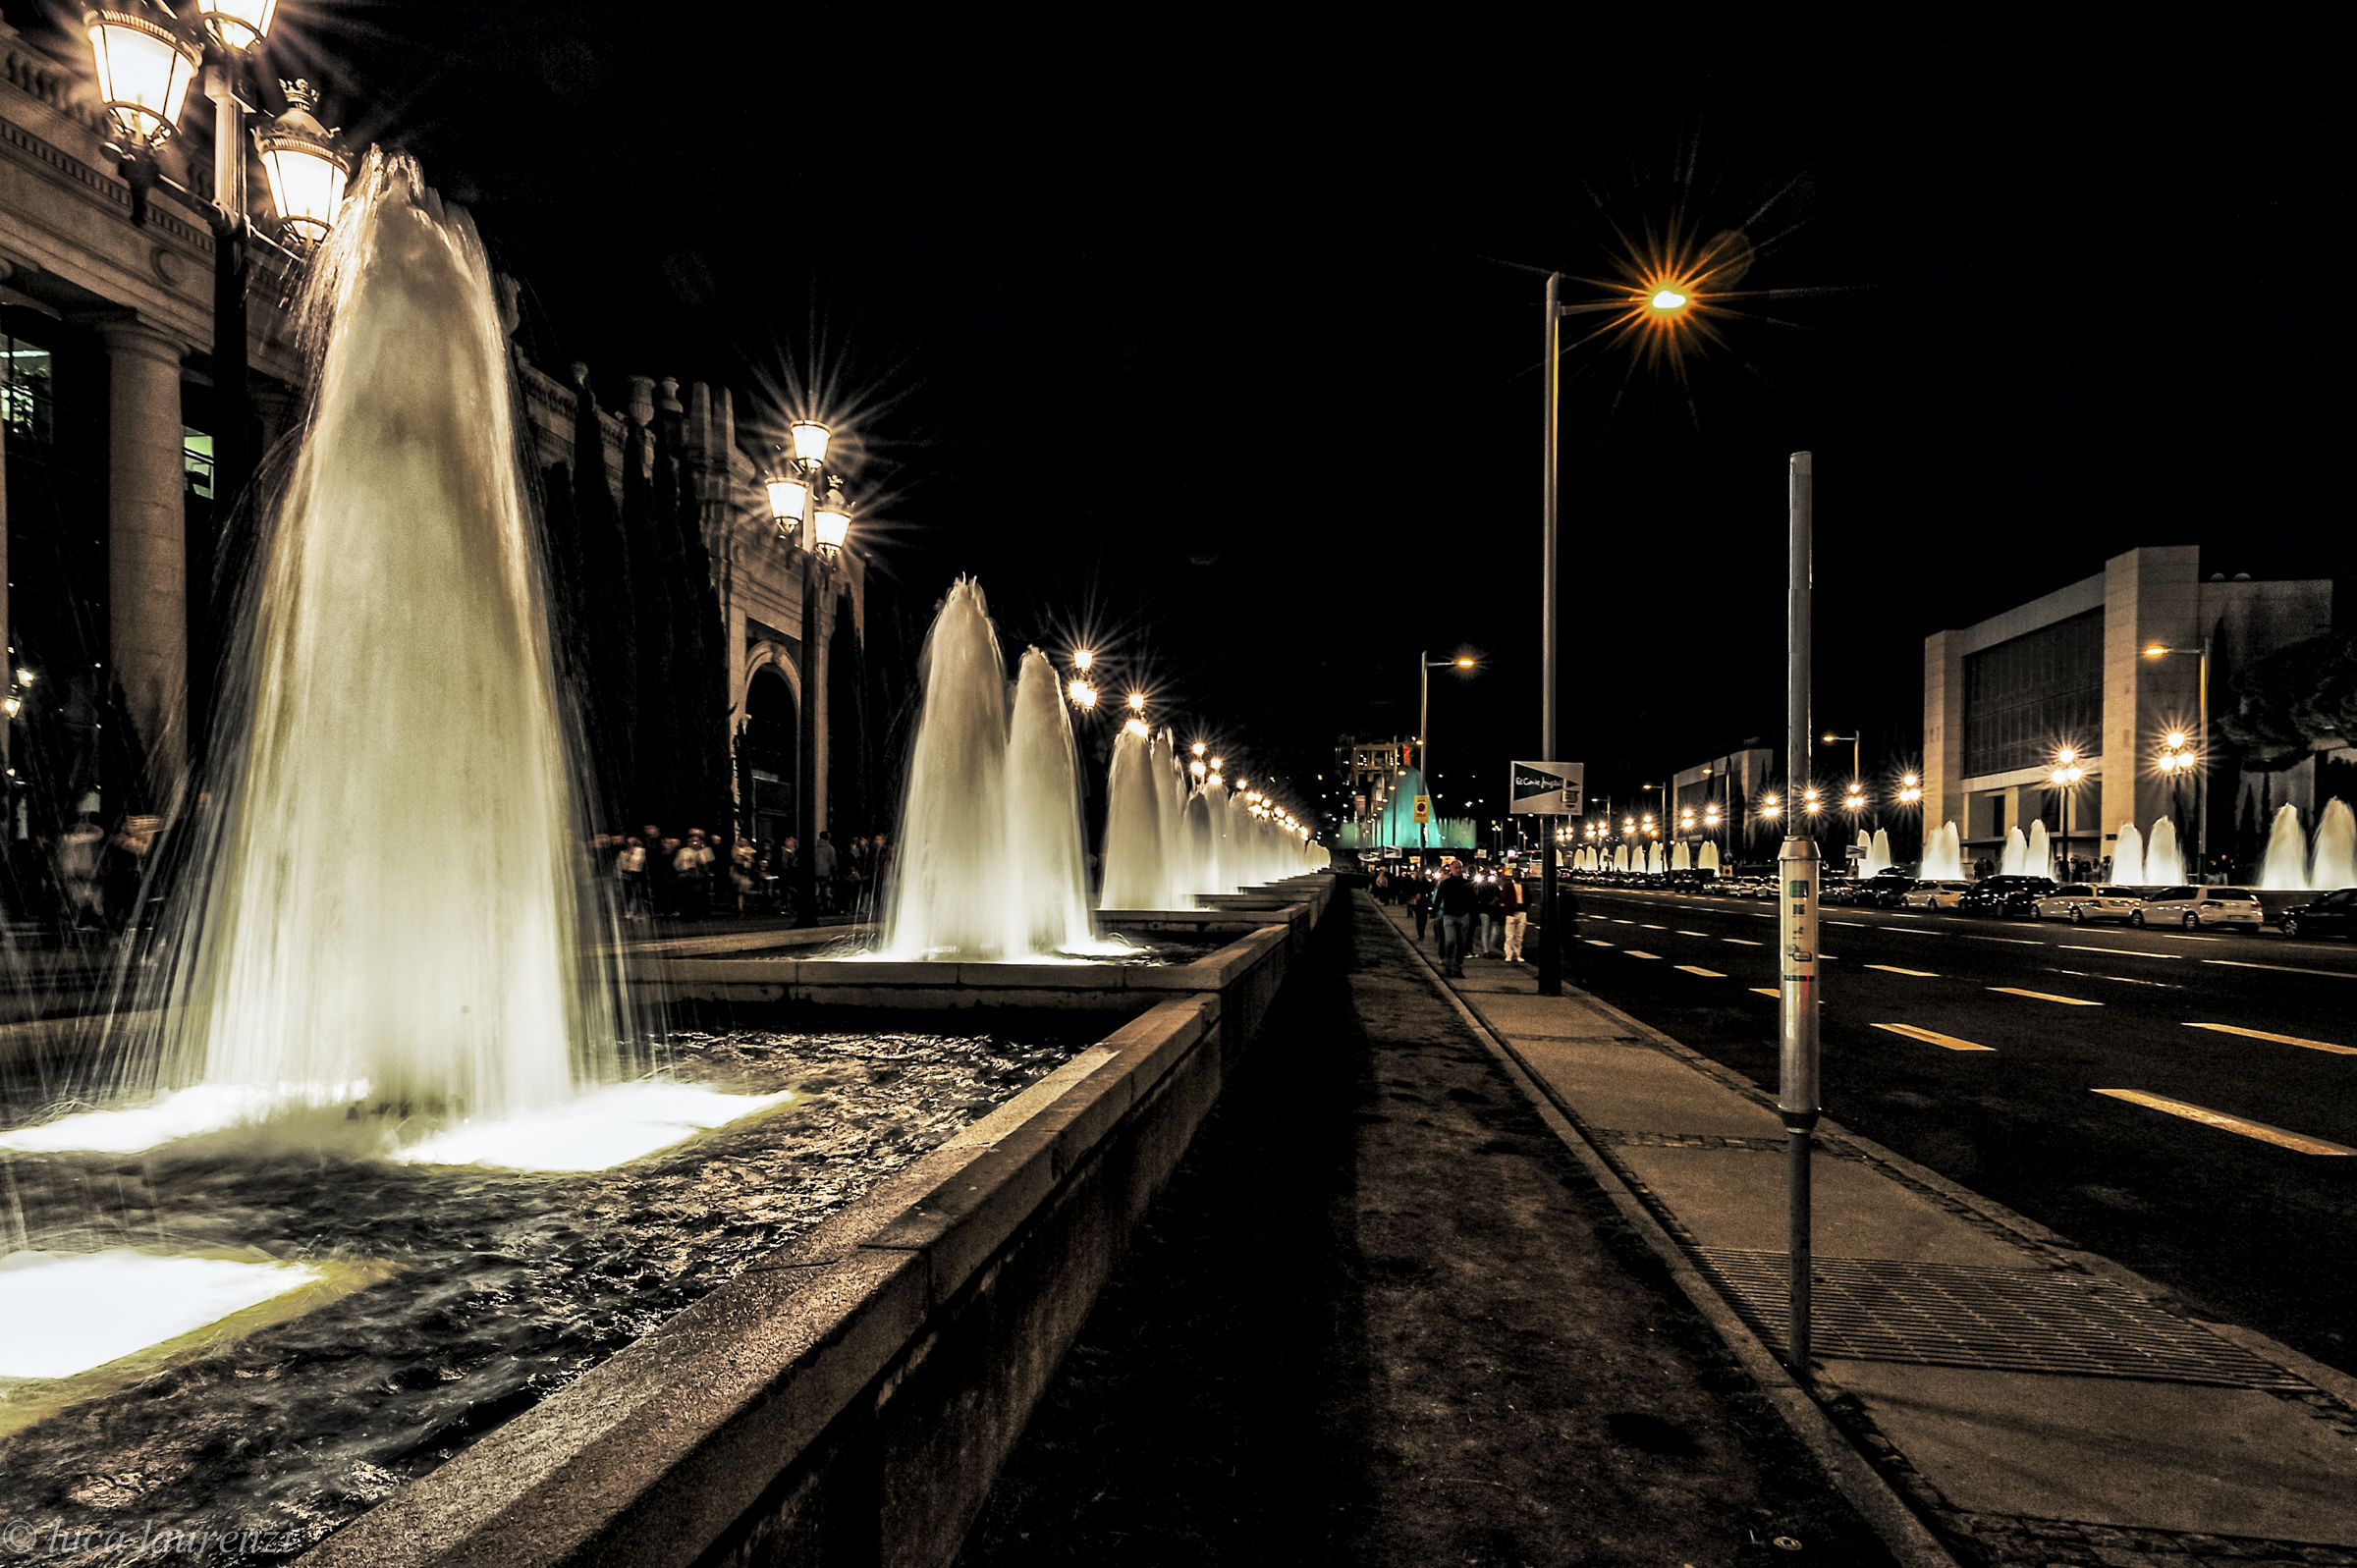 Il viale delle fontane...